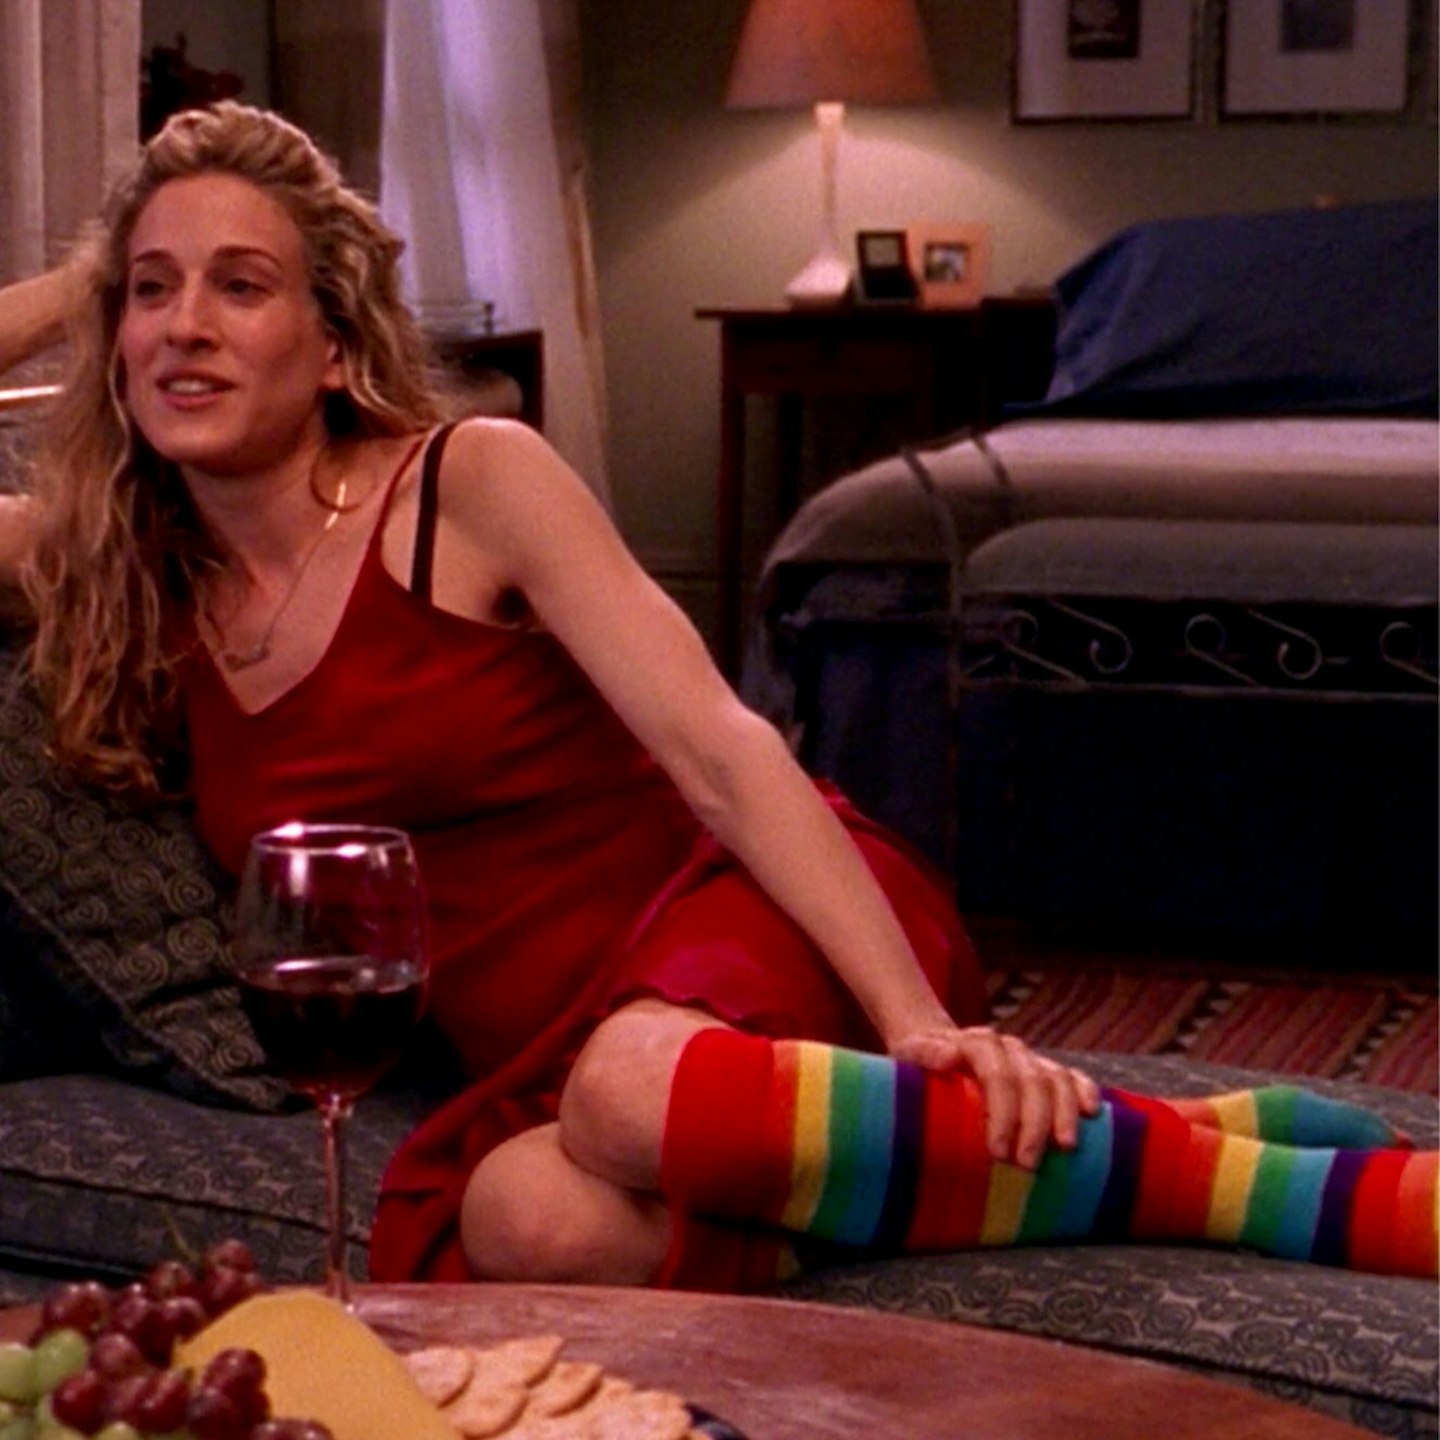 Carrie socks